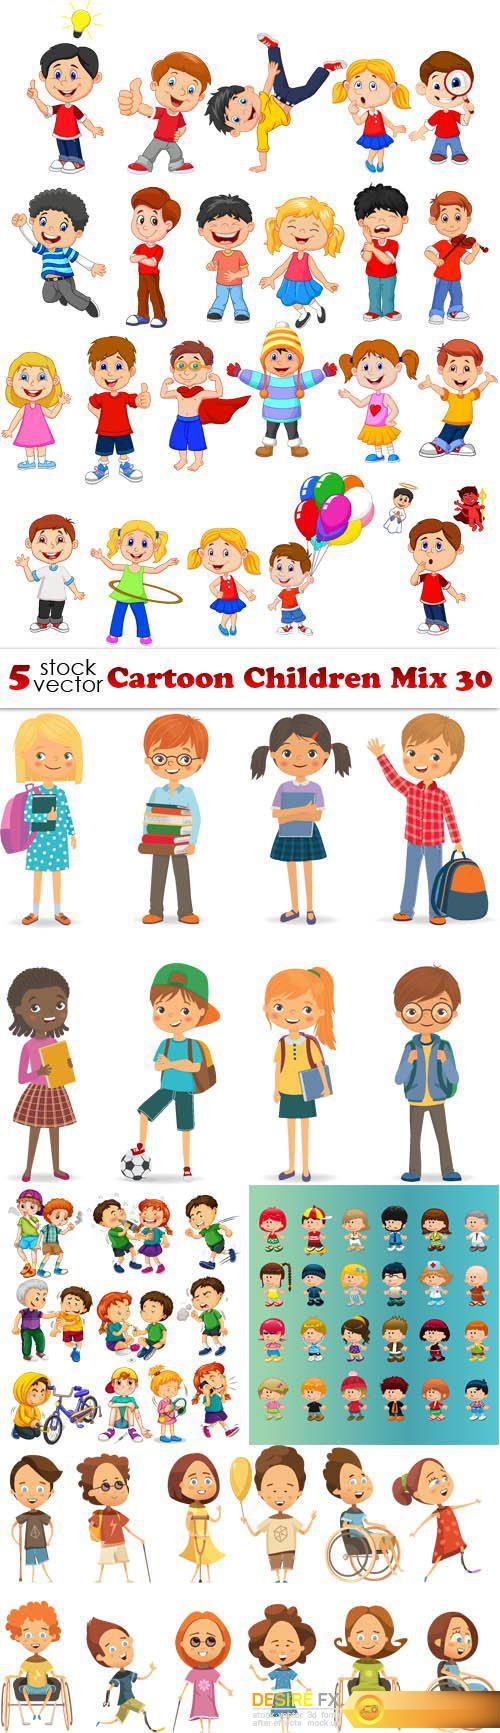 Vectors - Cartoon Children Mix 30